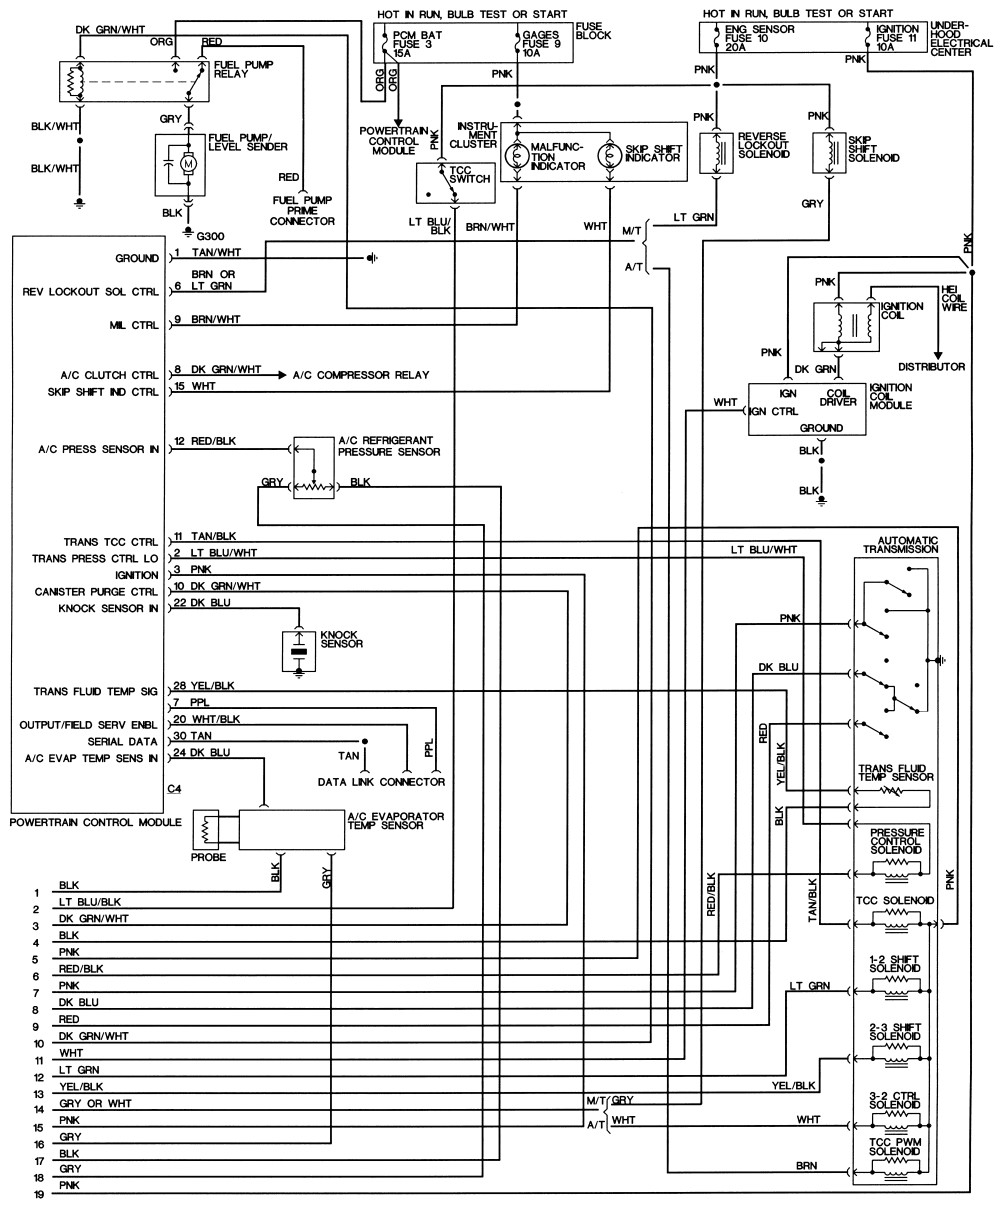 car wire diagram 1998 mustang Wire Diagram 1998 Mustang alexdapiata